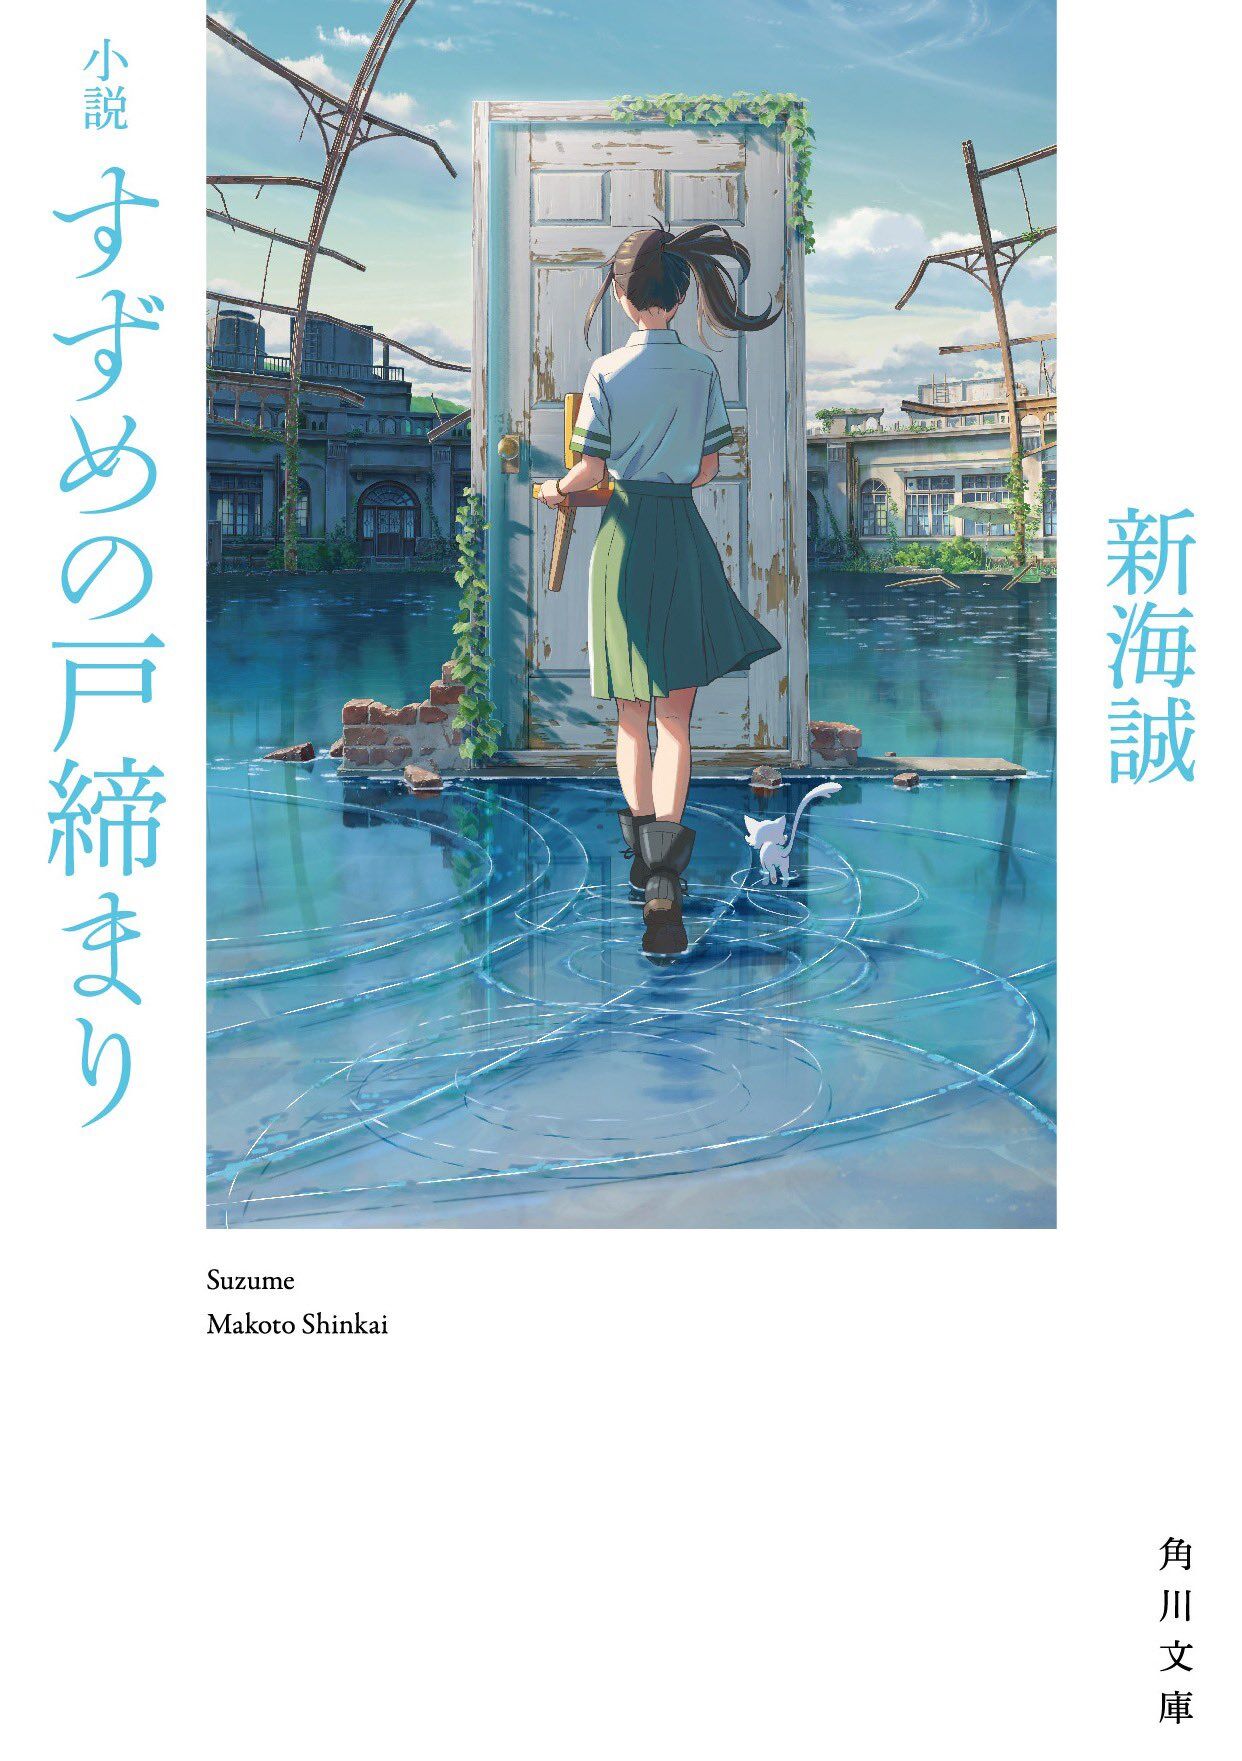 Suzume, Makoto Shinkai Wiki